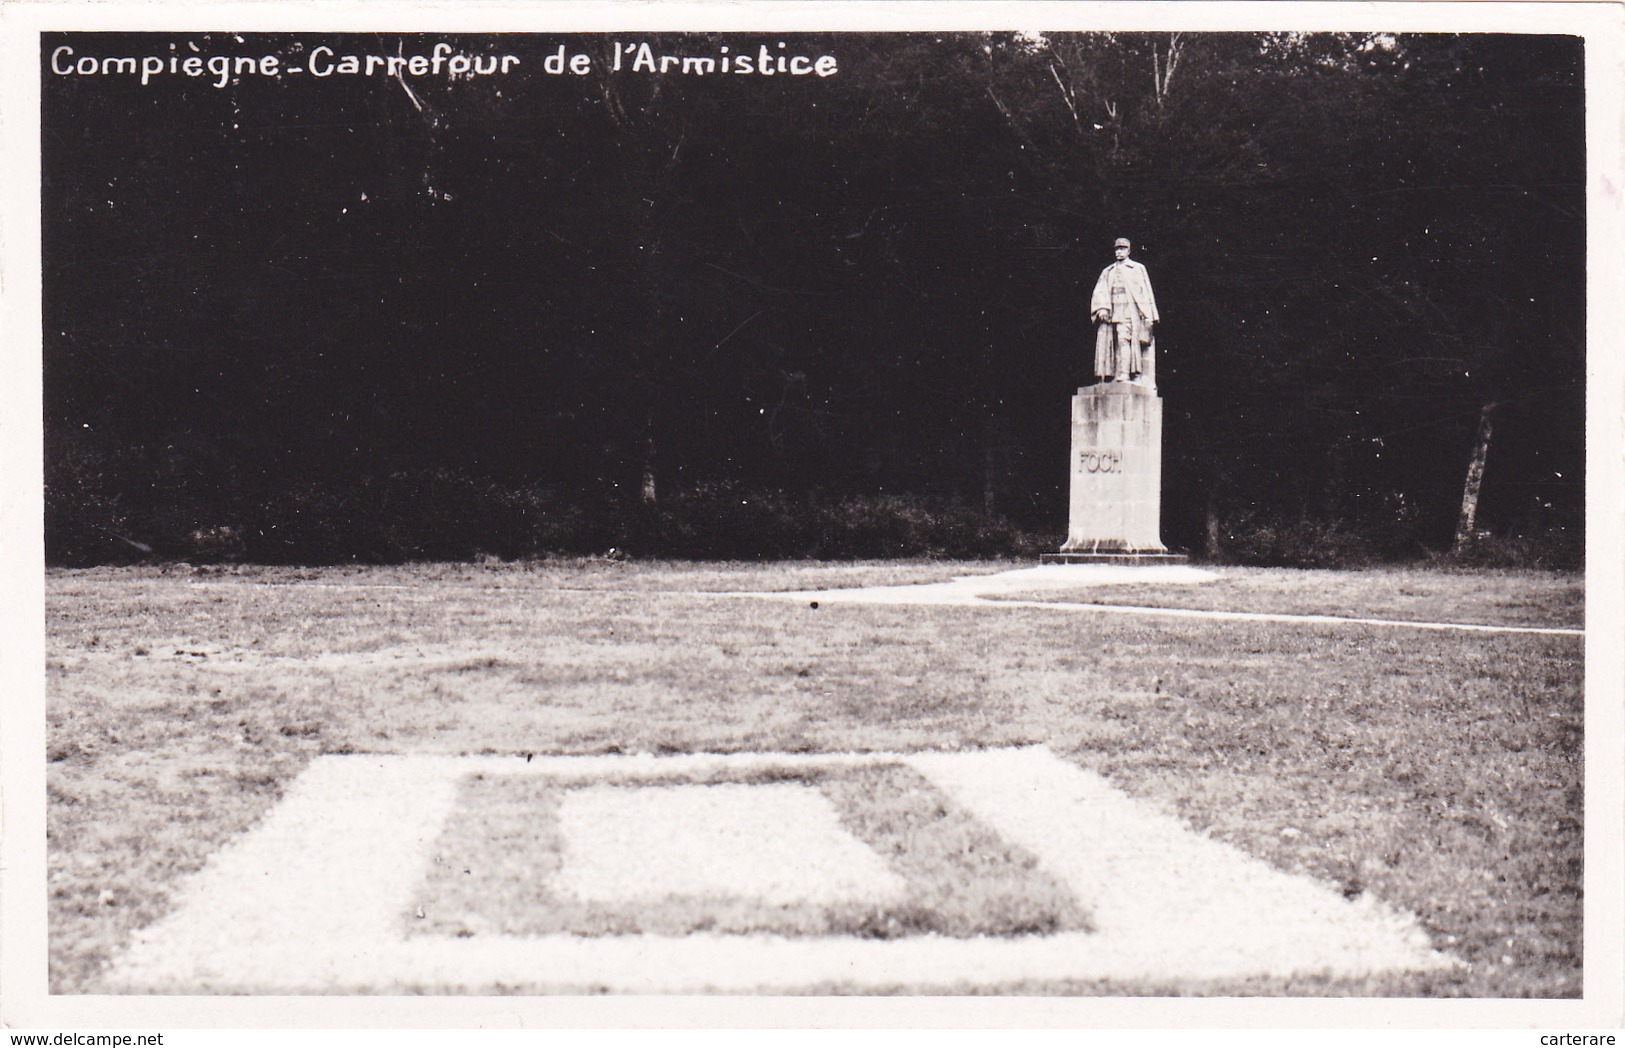 CARTE PHOTO,OISE,COMPIEGNE,FORET DOMANIALE,RETHONDES,LIEU DE SIGNATURE DE L'ARMISTICE,11 Nov 1918,60 - Monuments Aux Morts